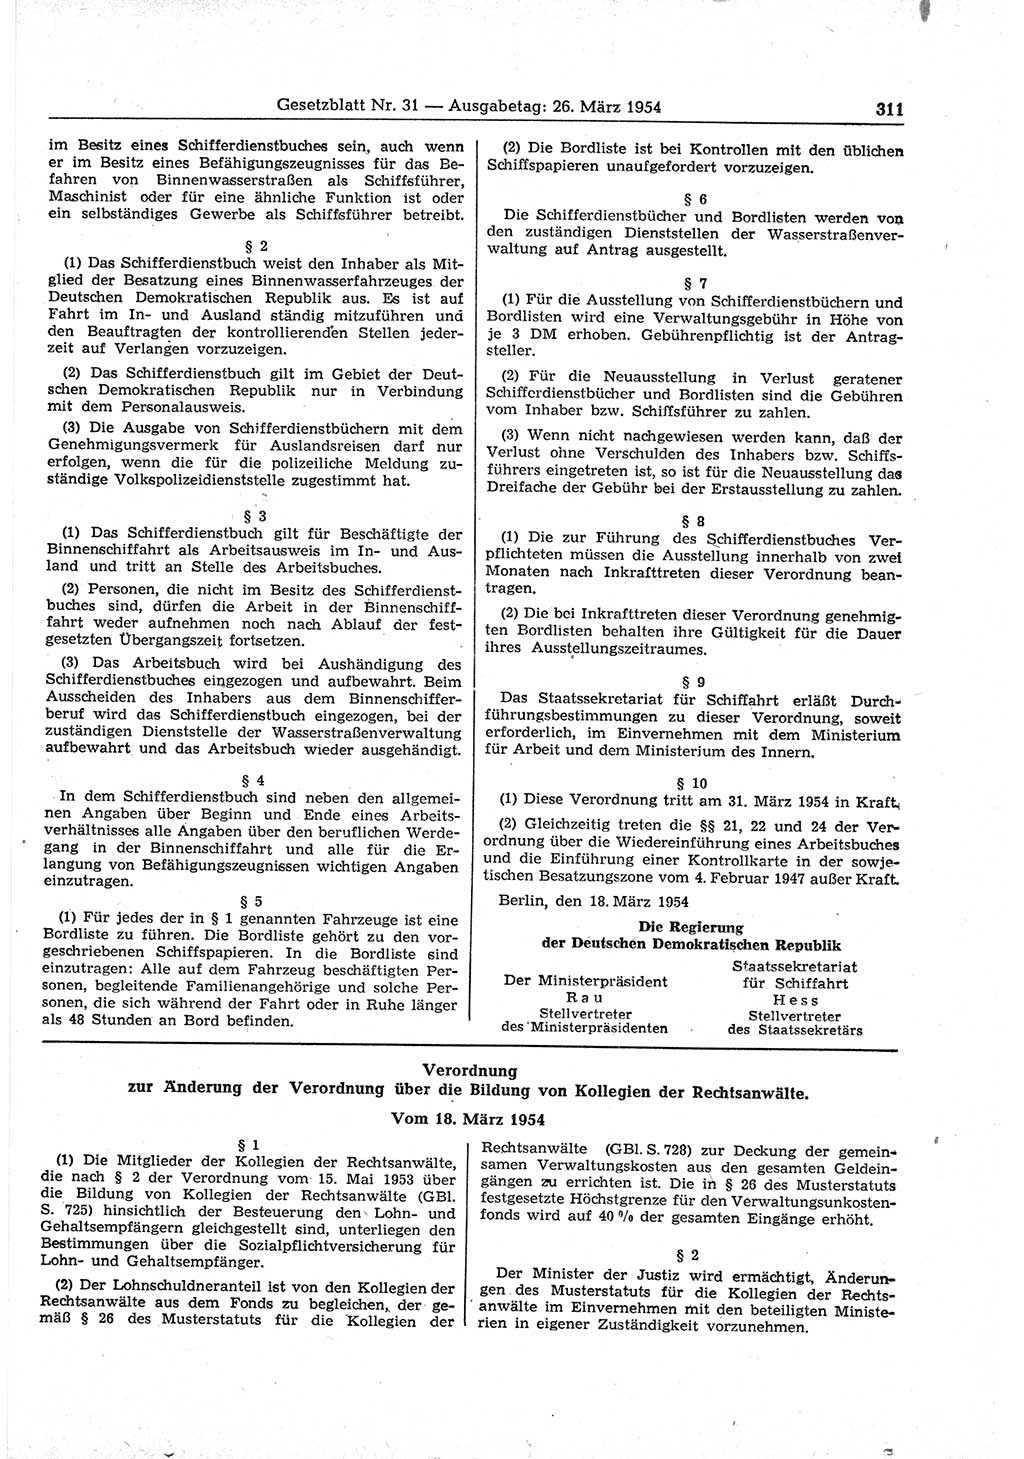 Gesetzblatt (GBl.) der Deutschen Demokratischen Republik (DDR) 1954, Seite 311 (GBl. DDR 1954, S. 311)